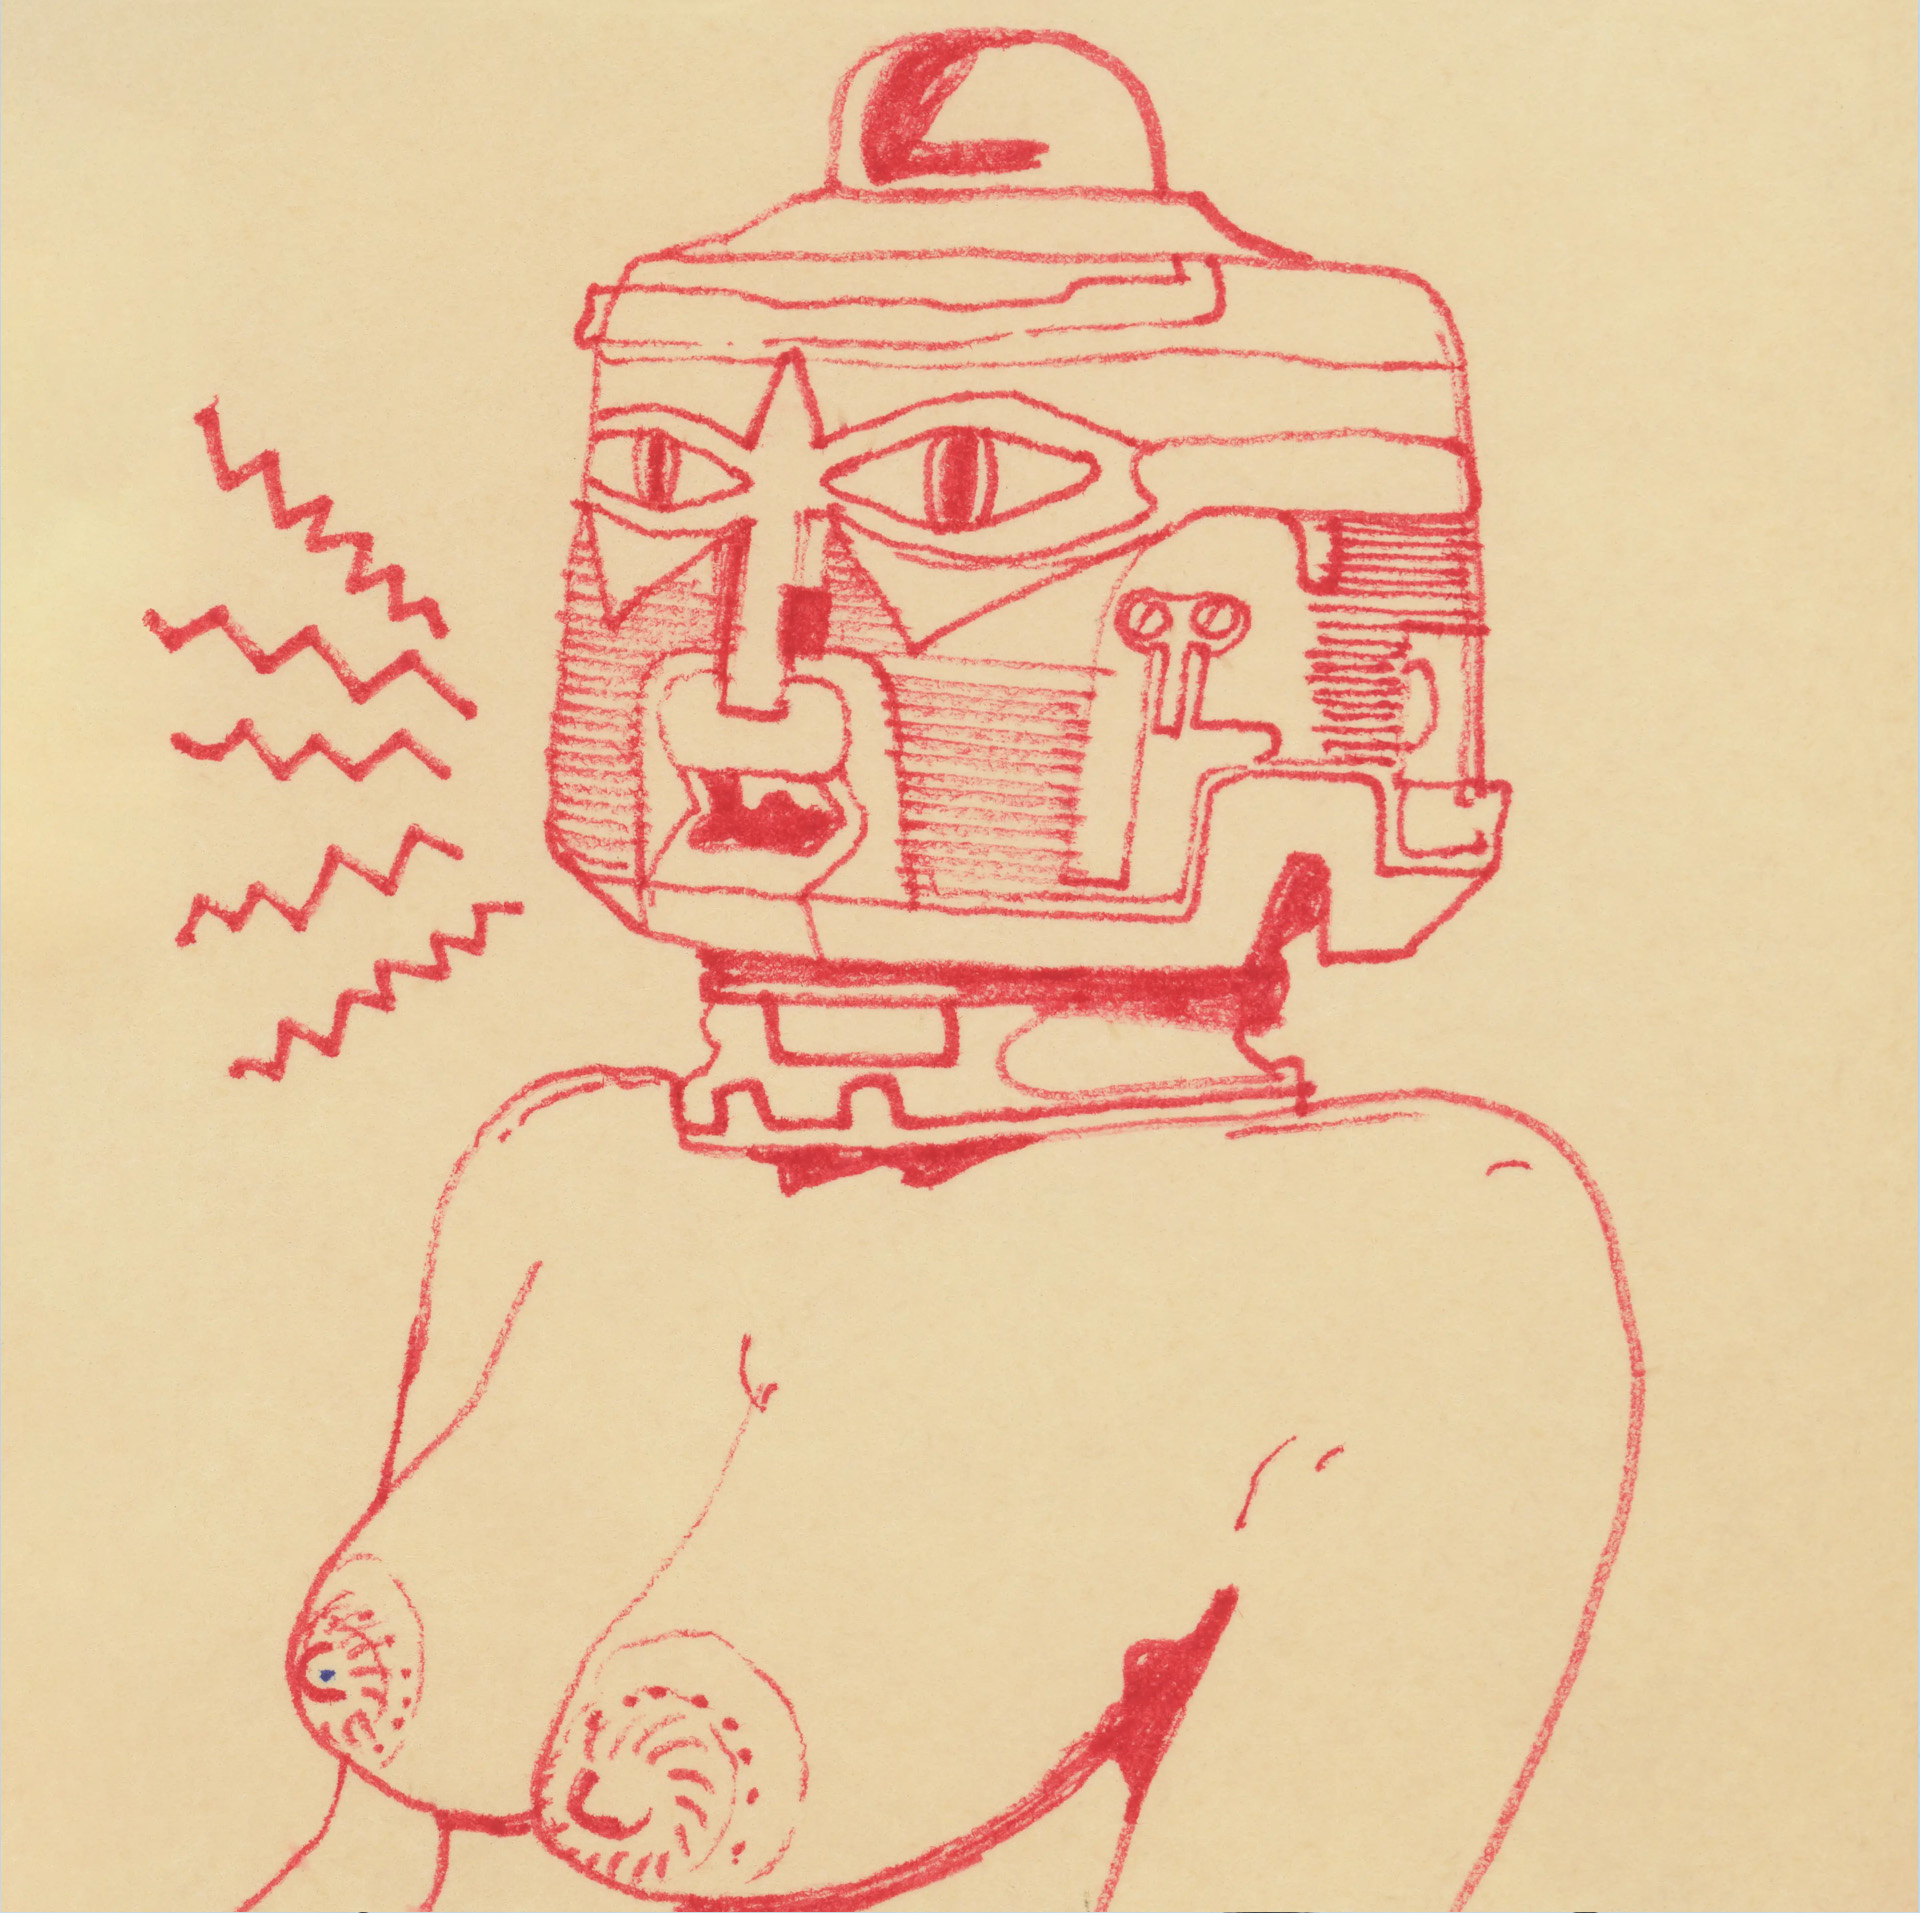 Spinetta dibujaba con birome, pero más adelante siguió dibujando con una tablet (enigma.art)